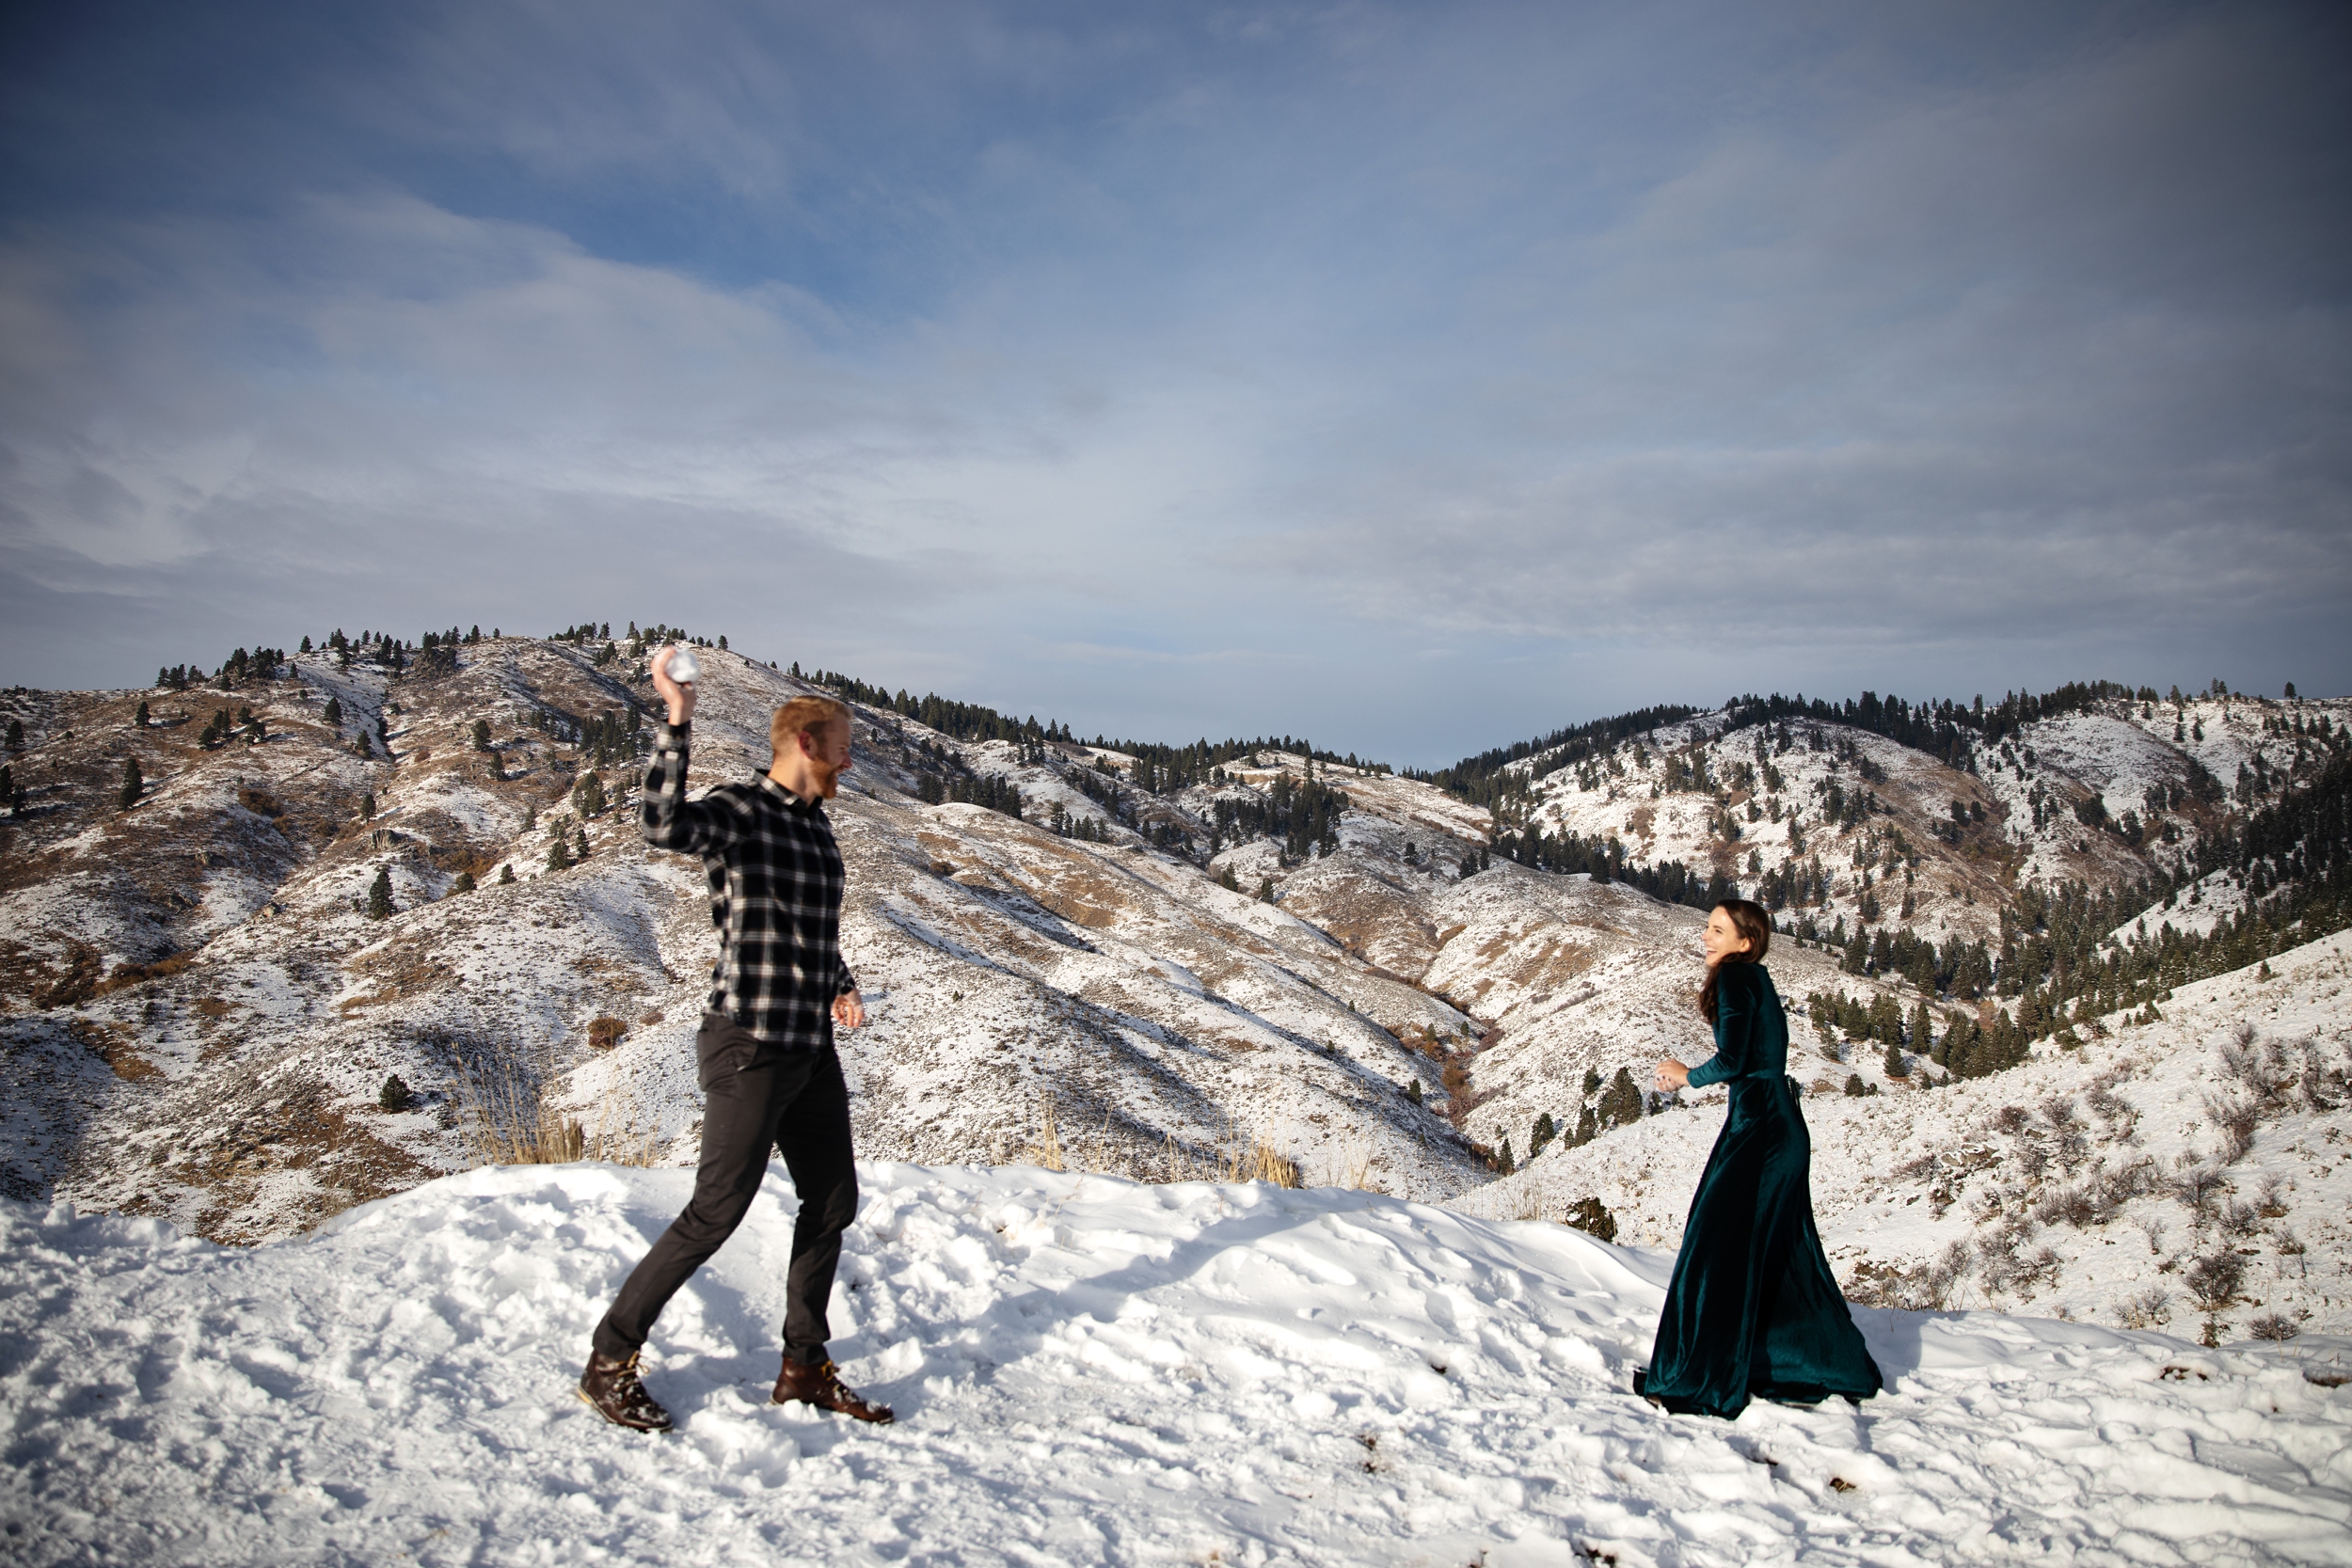 Boise Idaho Wedding and Engagement Photographer-Bogus Basin Winter Engagement Photos